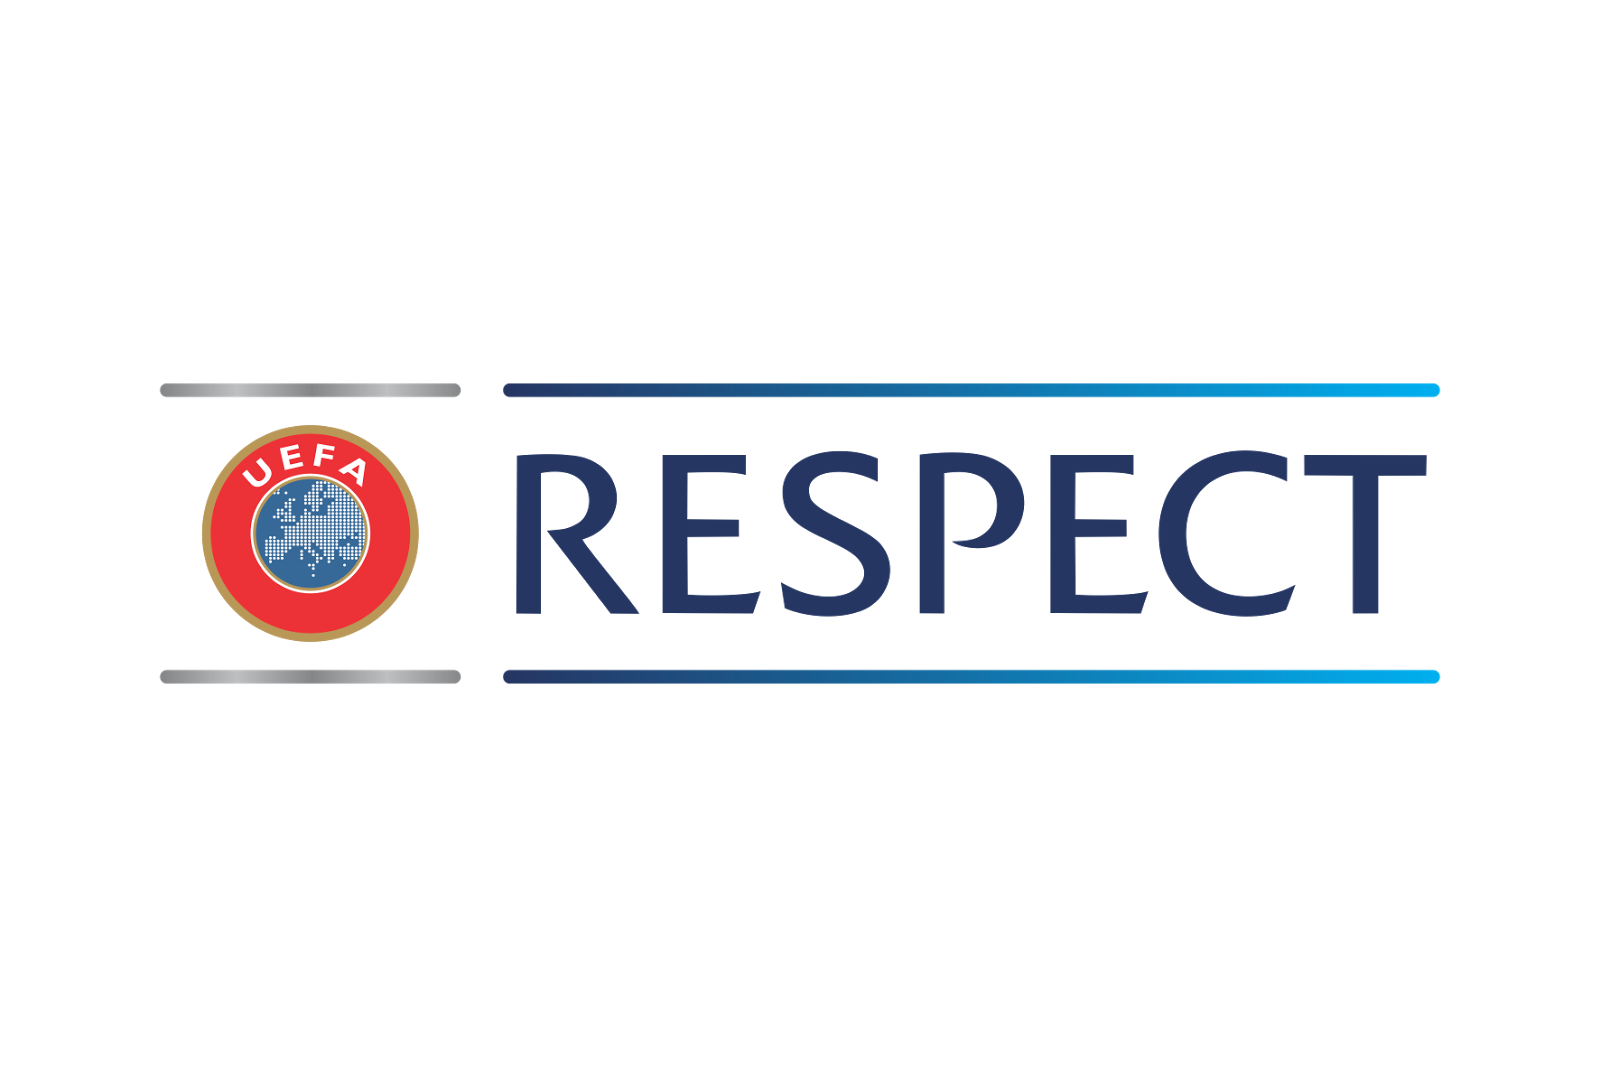 Logo of UEFA